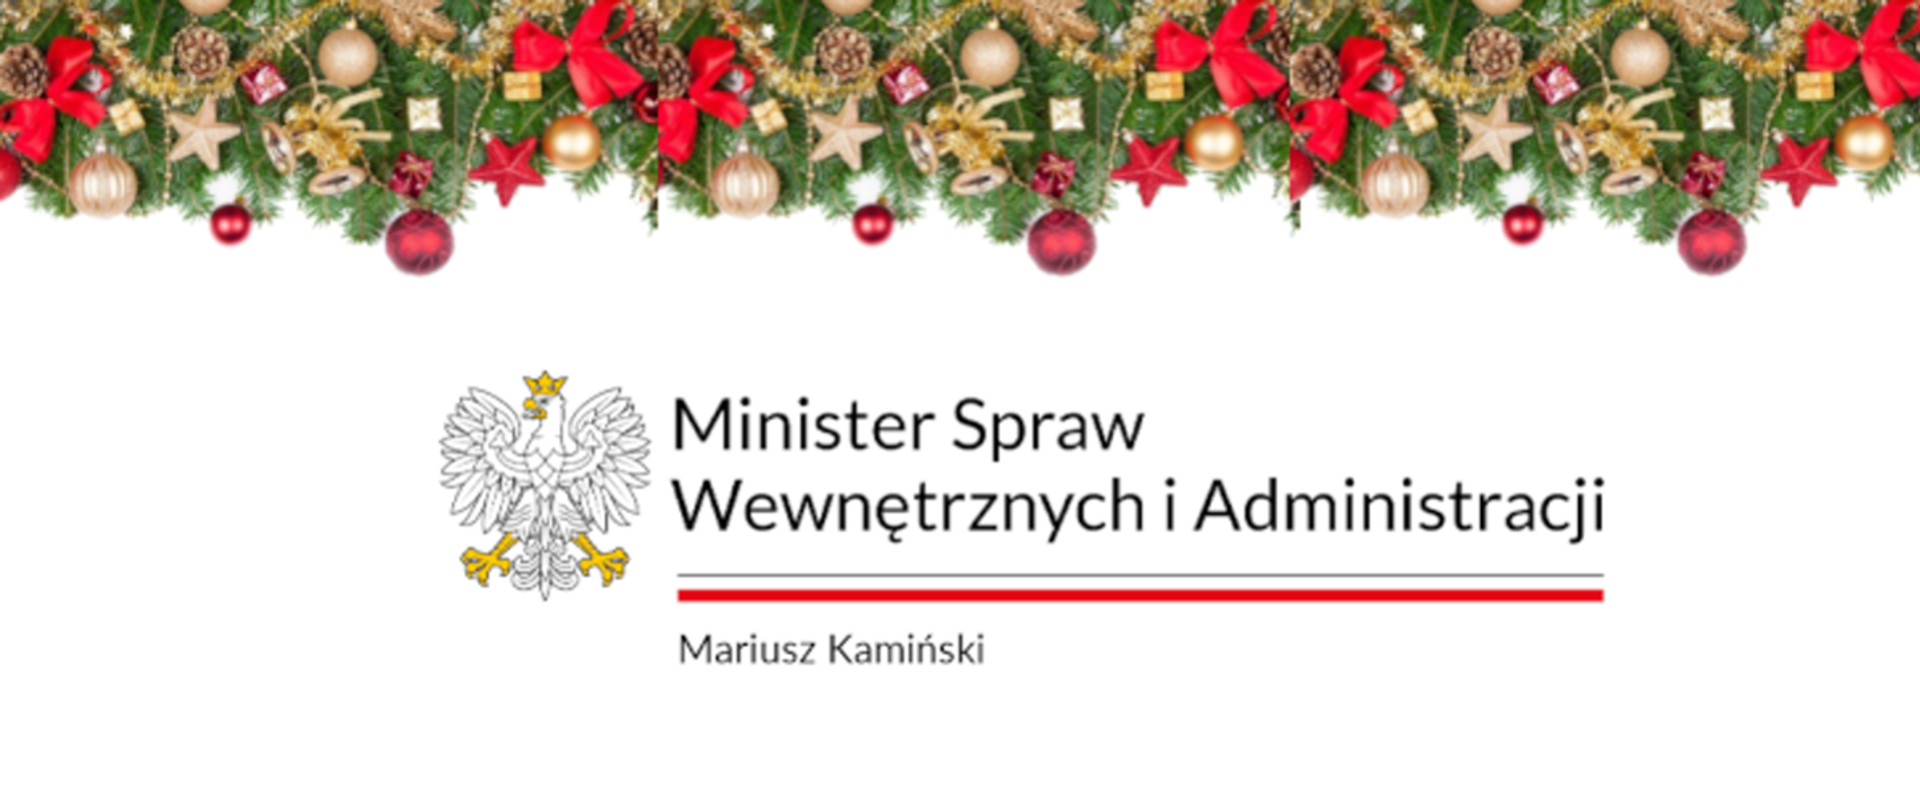 U góry ozdoby świąteczne na środku napis Ministerstwo Spraw Wewnętrznych i Administracji Mariusz Kamiński